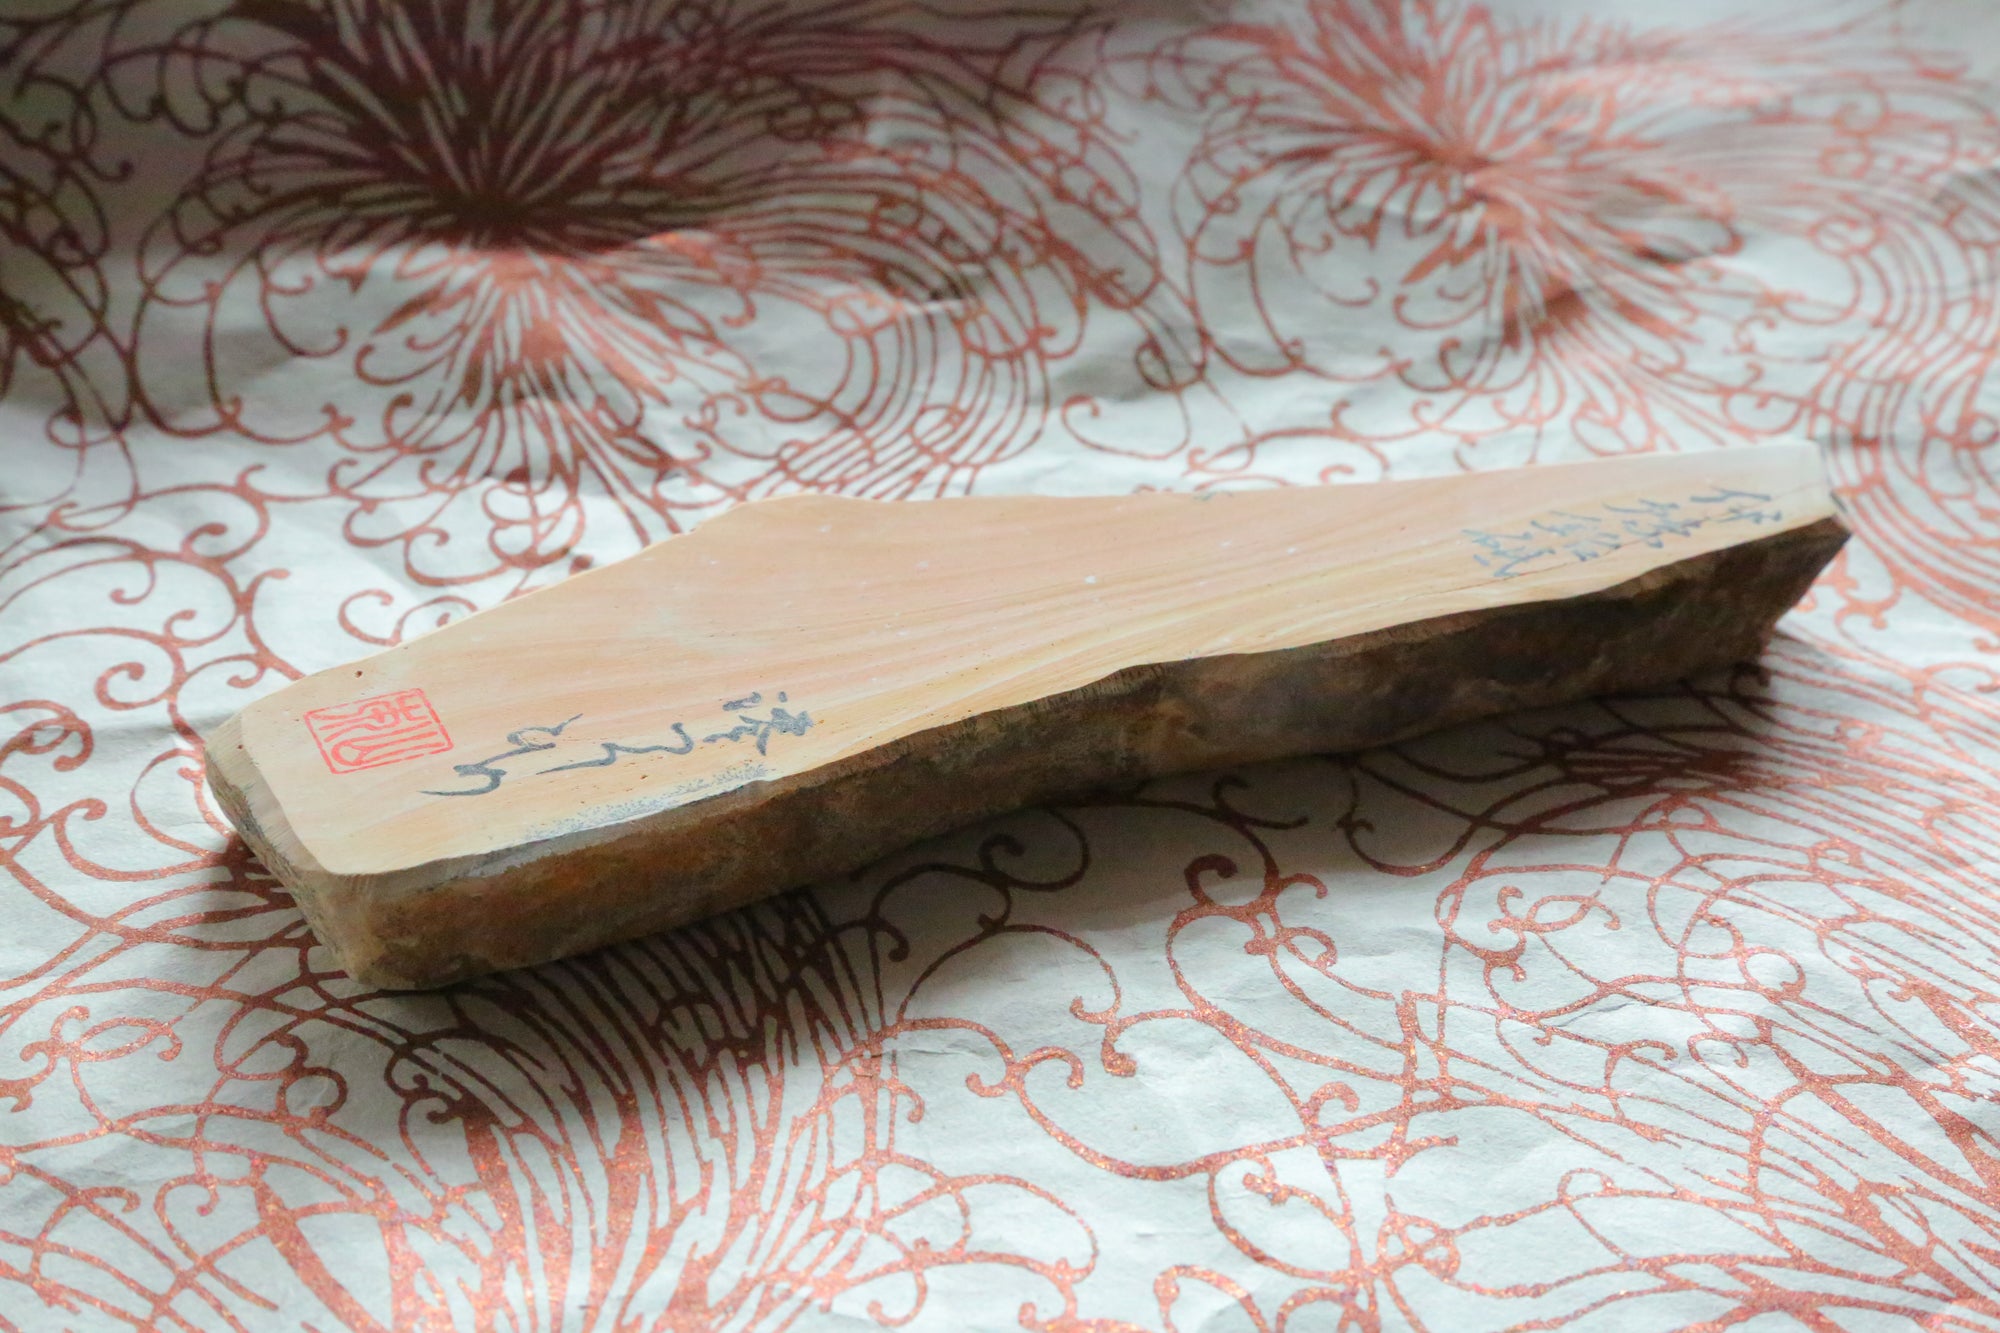  Iyo-Meito wood pattern